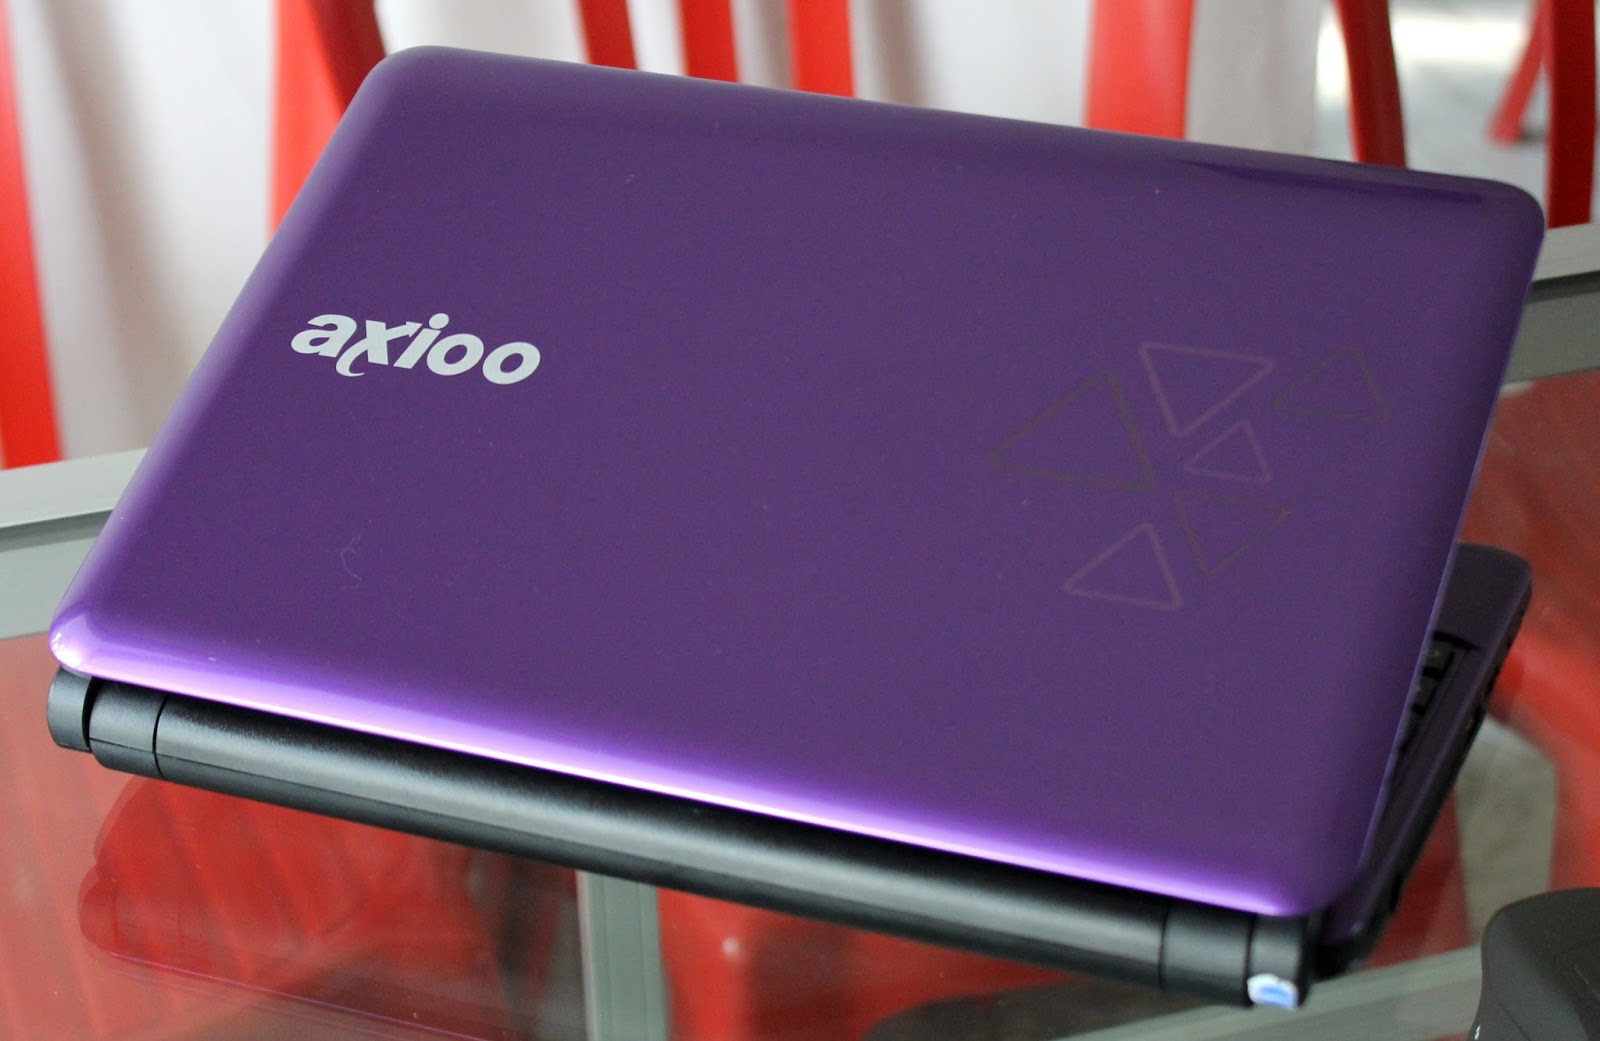  Jual  Axioo Pico CJM Bekas  Di Malang  Jual  Beli Laptop 